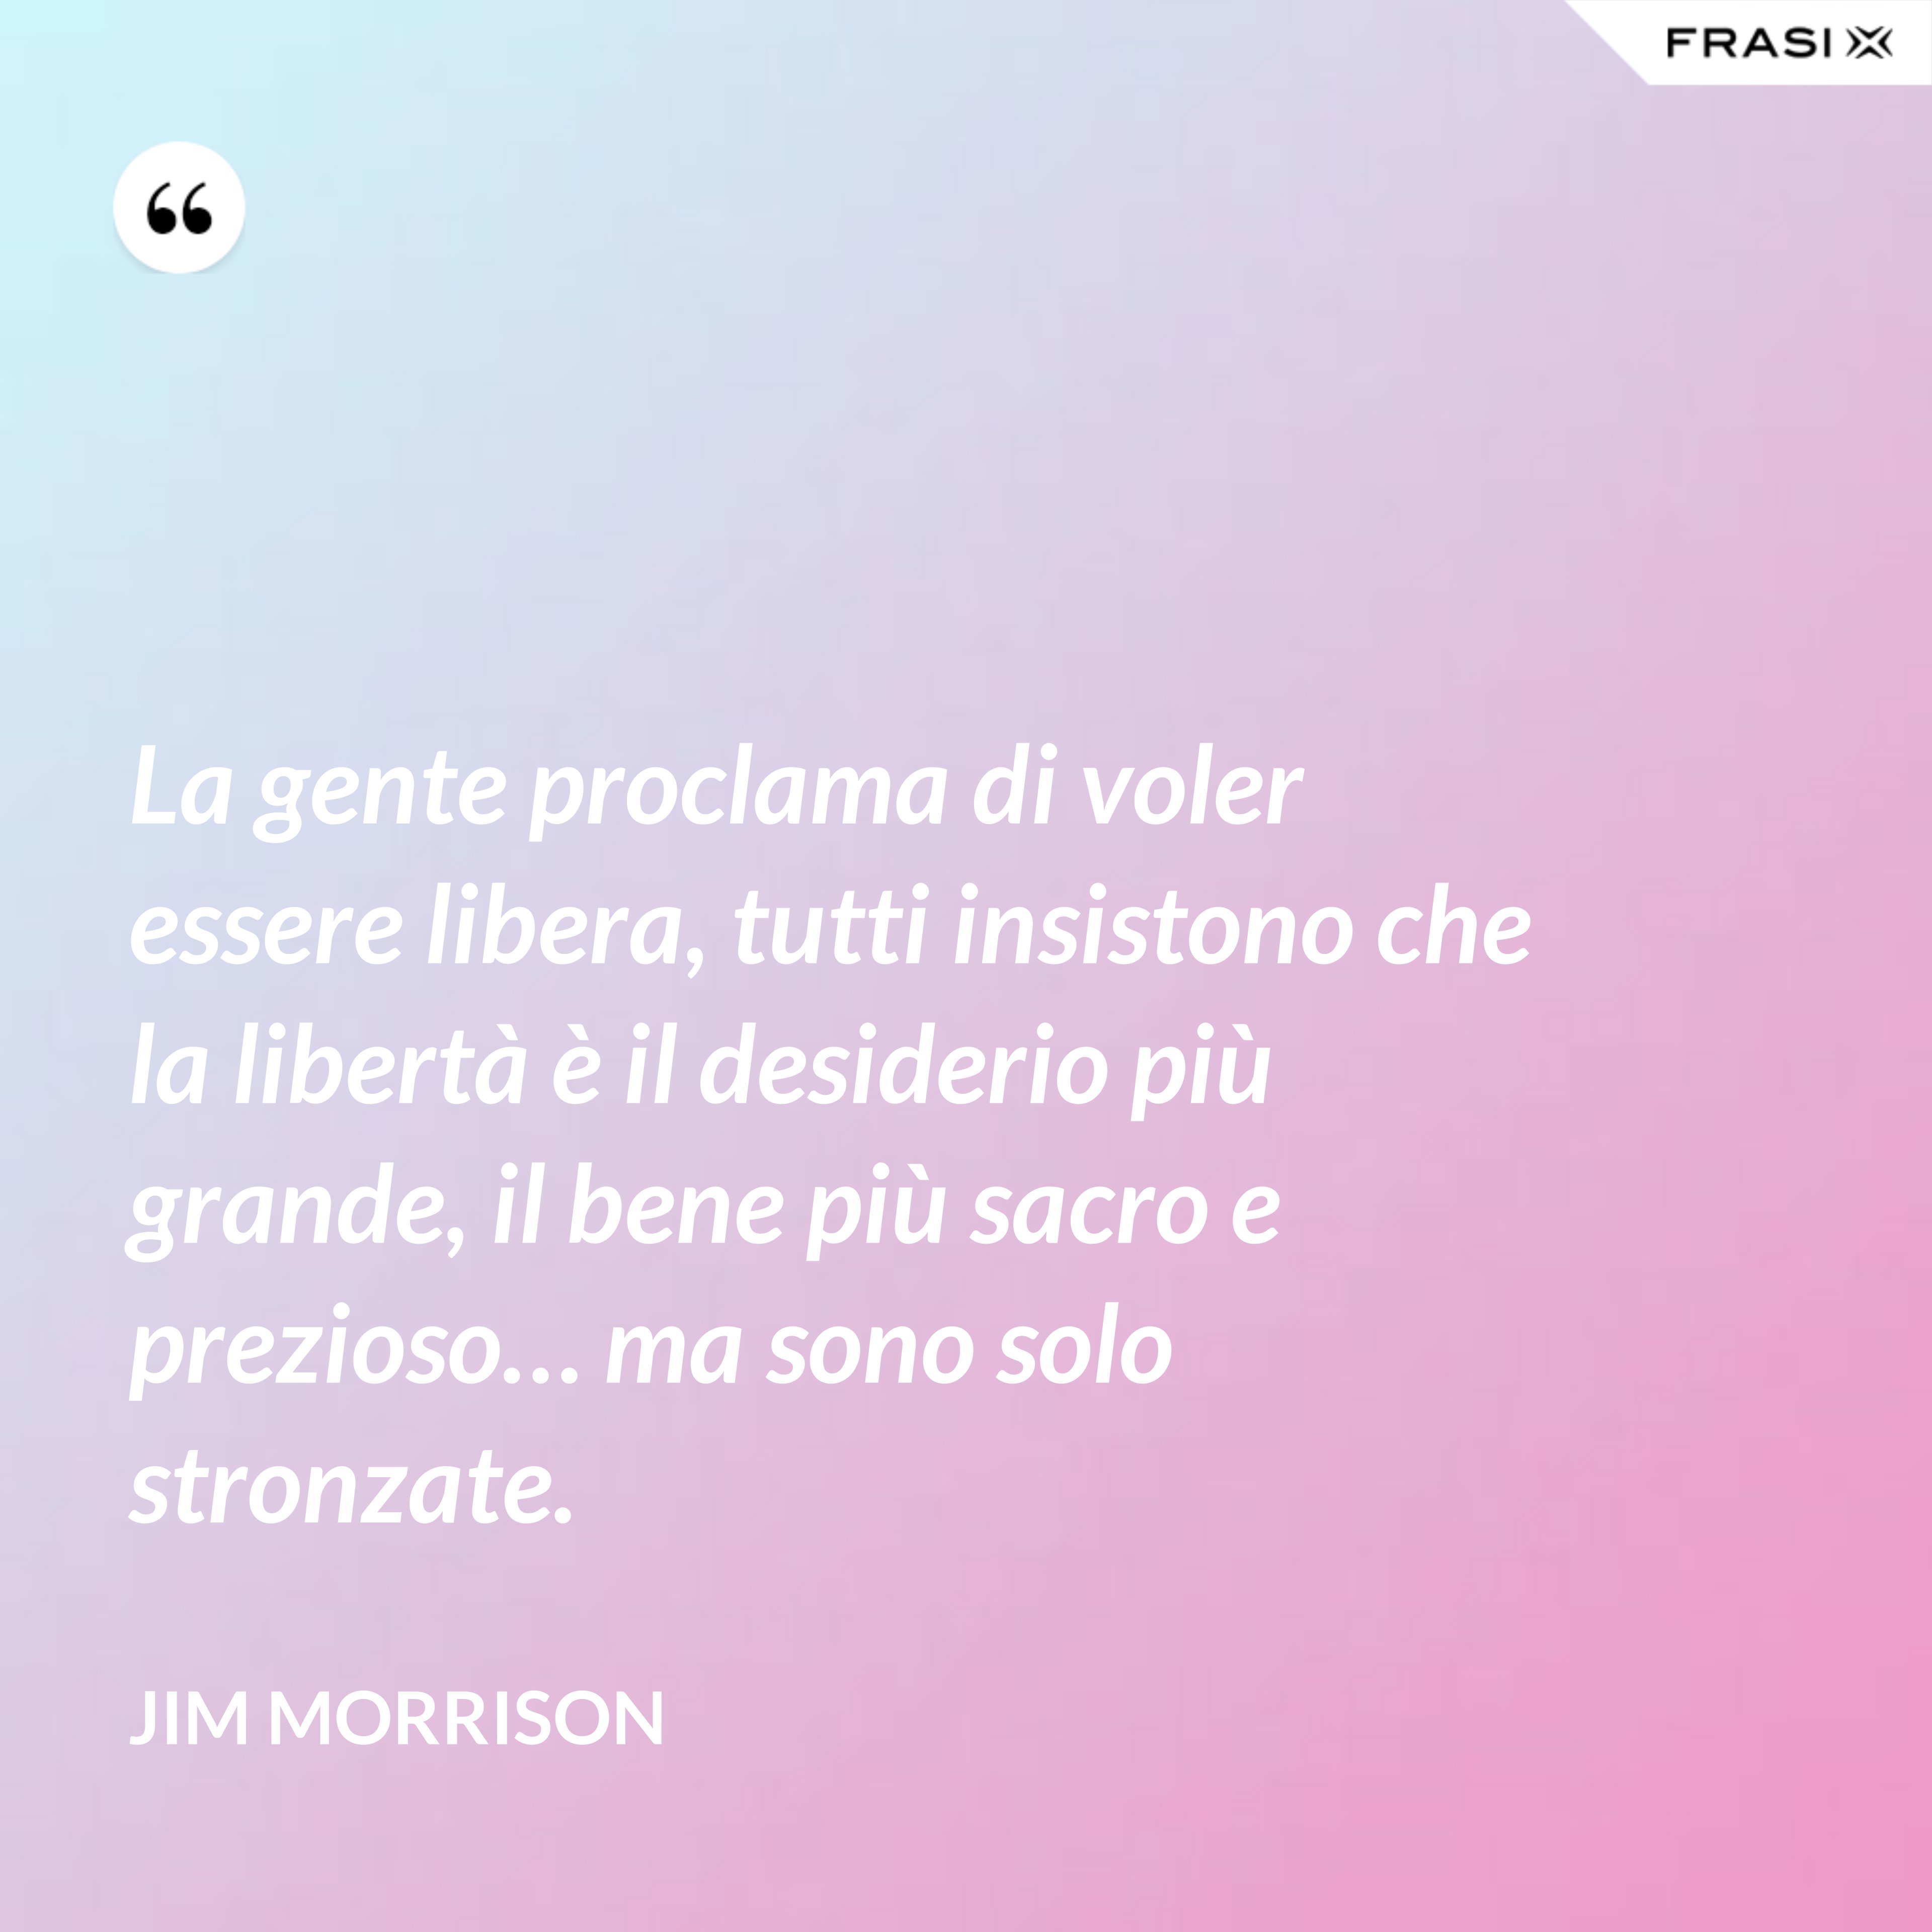 La gente proclama di voler essere libera, tutti insistono che la libertà è il desiderio più grande, il bene più sacro e prezioso… ma sono solo stronzate. - Jim Morrison